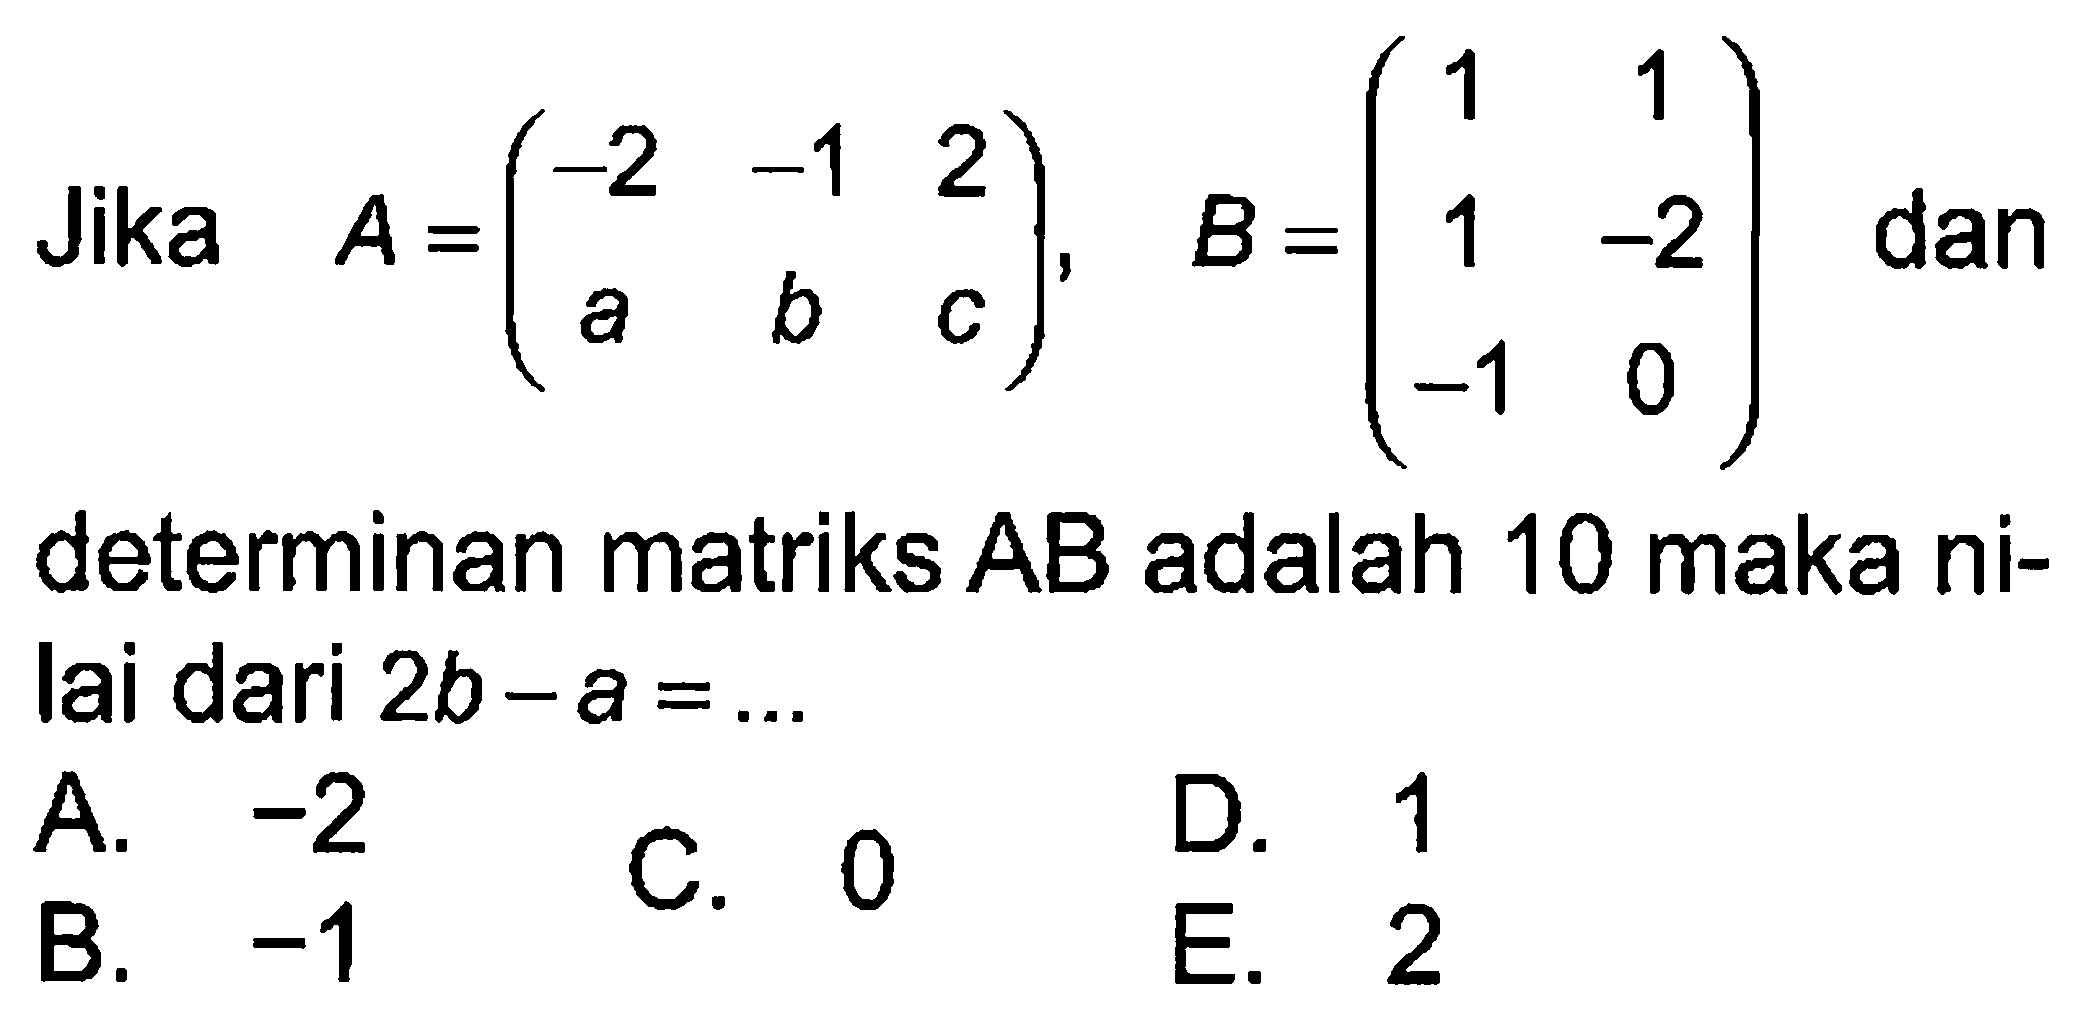 Jika A = (-2 -1 2 a b c), B = (1 1 1 -2 -1 0) dan determinan matriks AB adalah 10 maka ni-lai dari 2b-a = ...